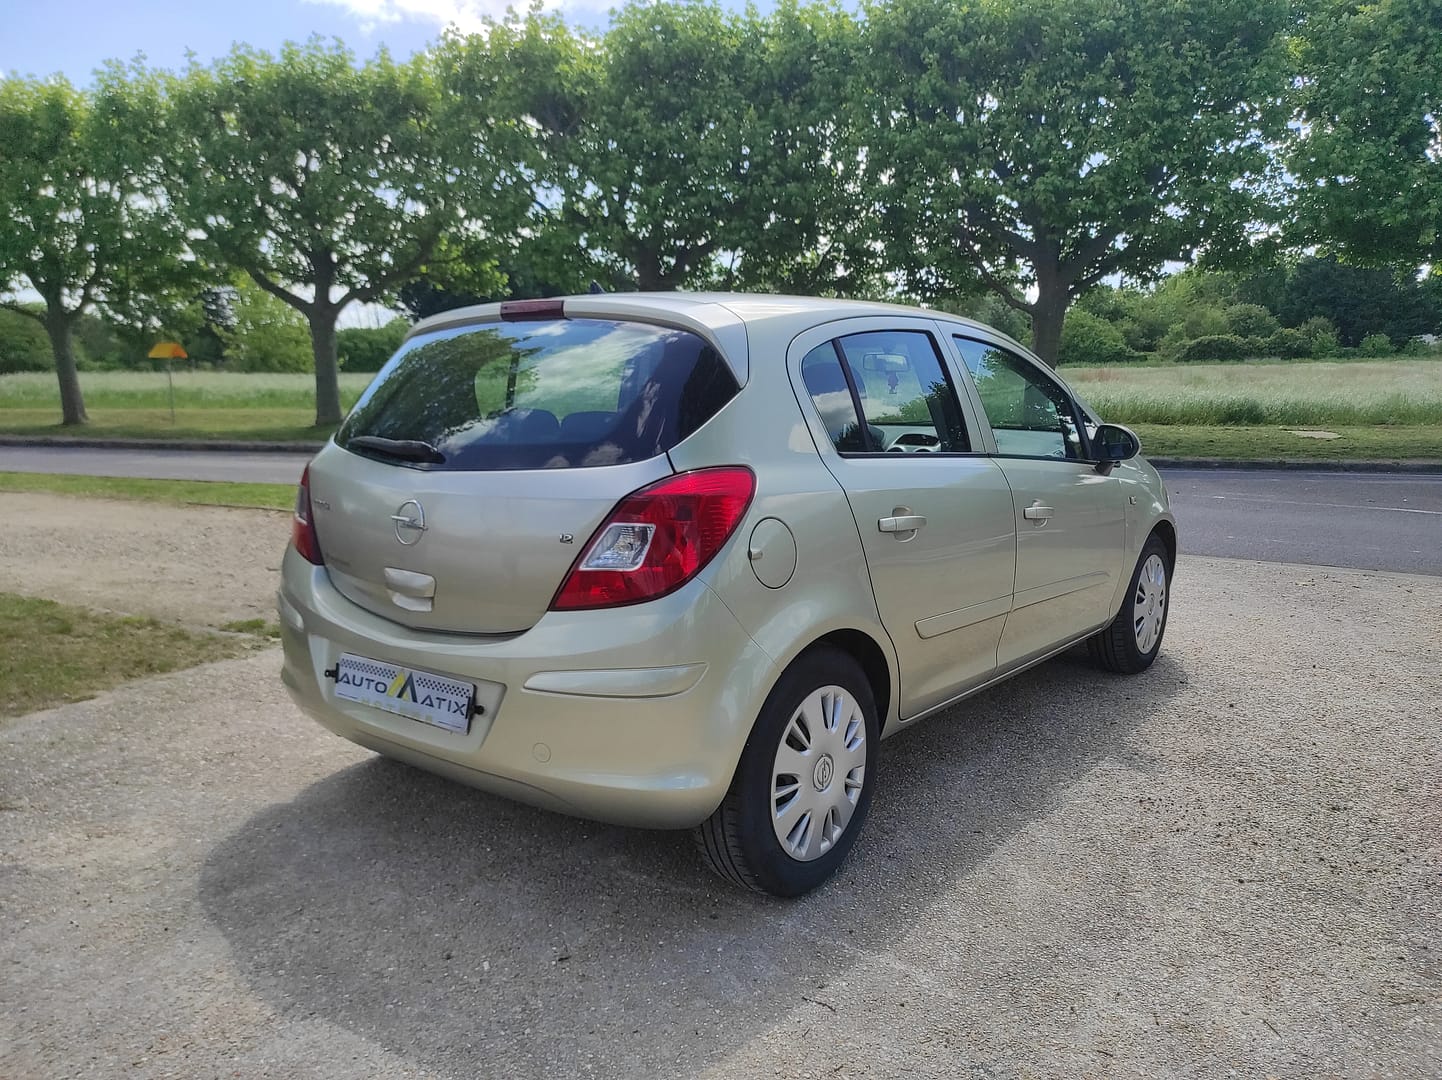 Opel Corsa 1.2 Twinport Enjoy 5P - Automatix Motors - Voiture Occasion - Achat Voiture - Vente Voiture - Reprise Voiture